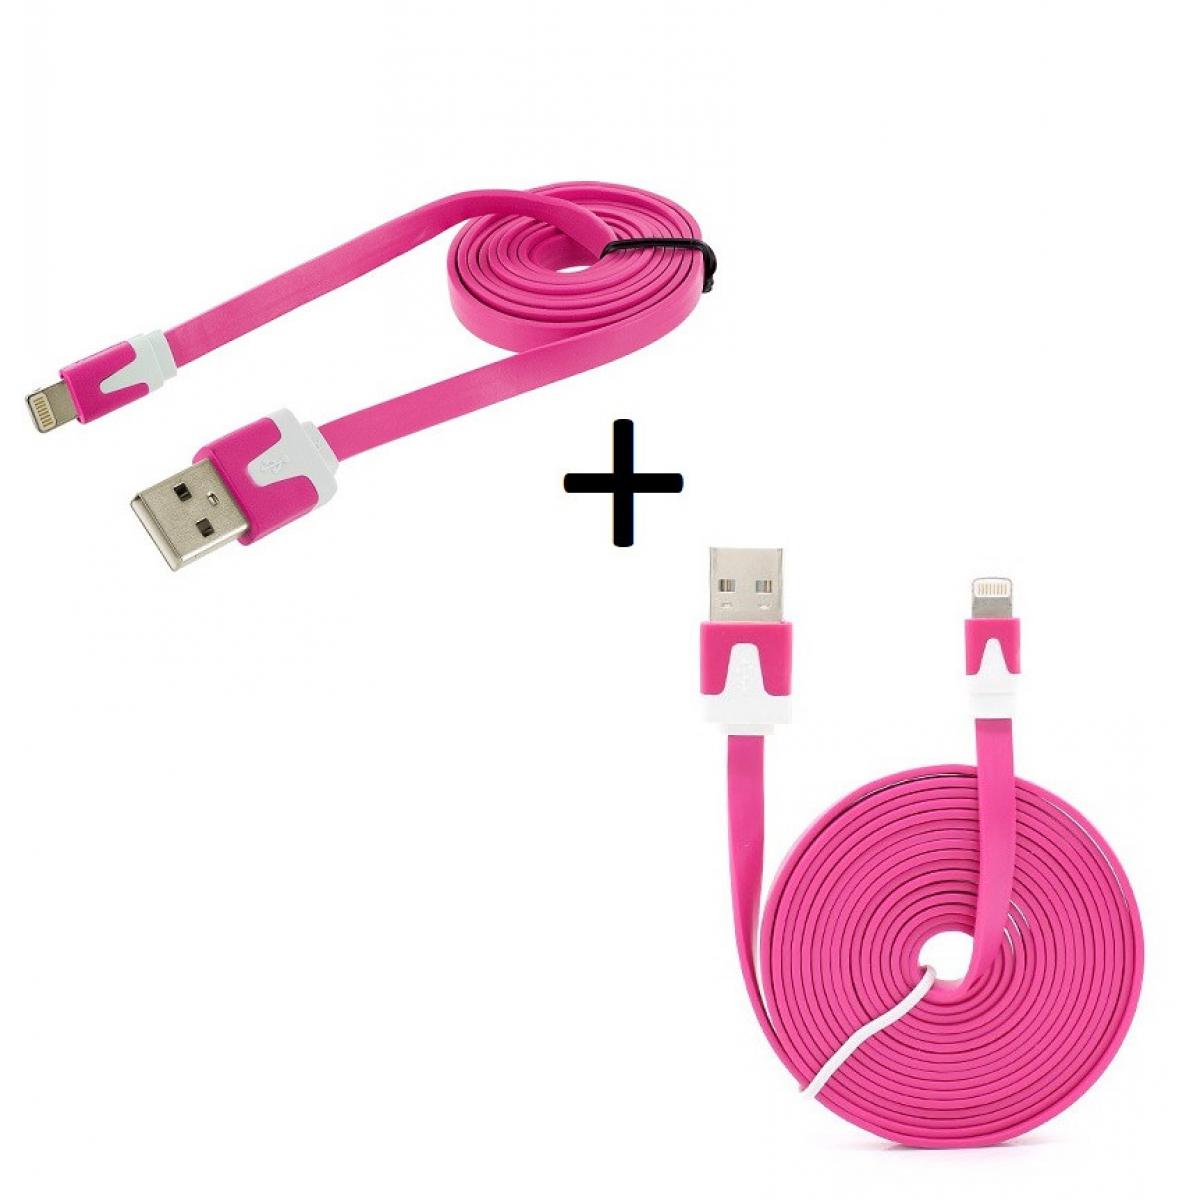 Shot - Pack Chargeur pour IPHONE SE 2020 Lightning (Cable Noodle 3m + Cable Noodle 1m) USB APPLE IOS (ROSE) - Chargeur secteur téléphone